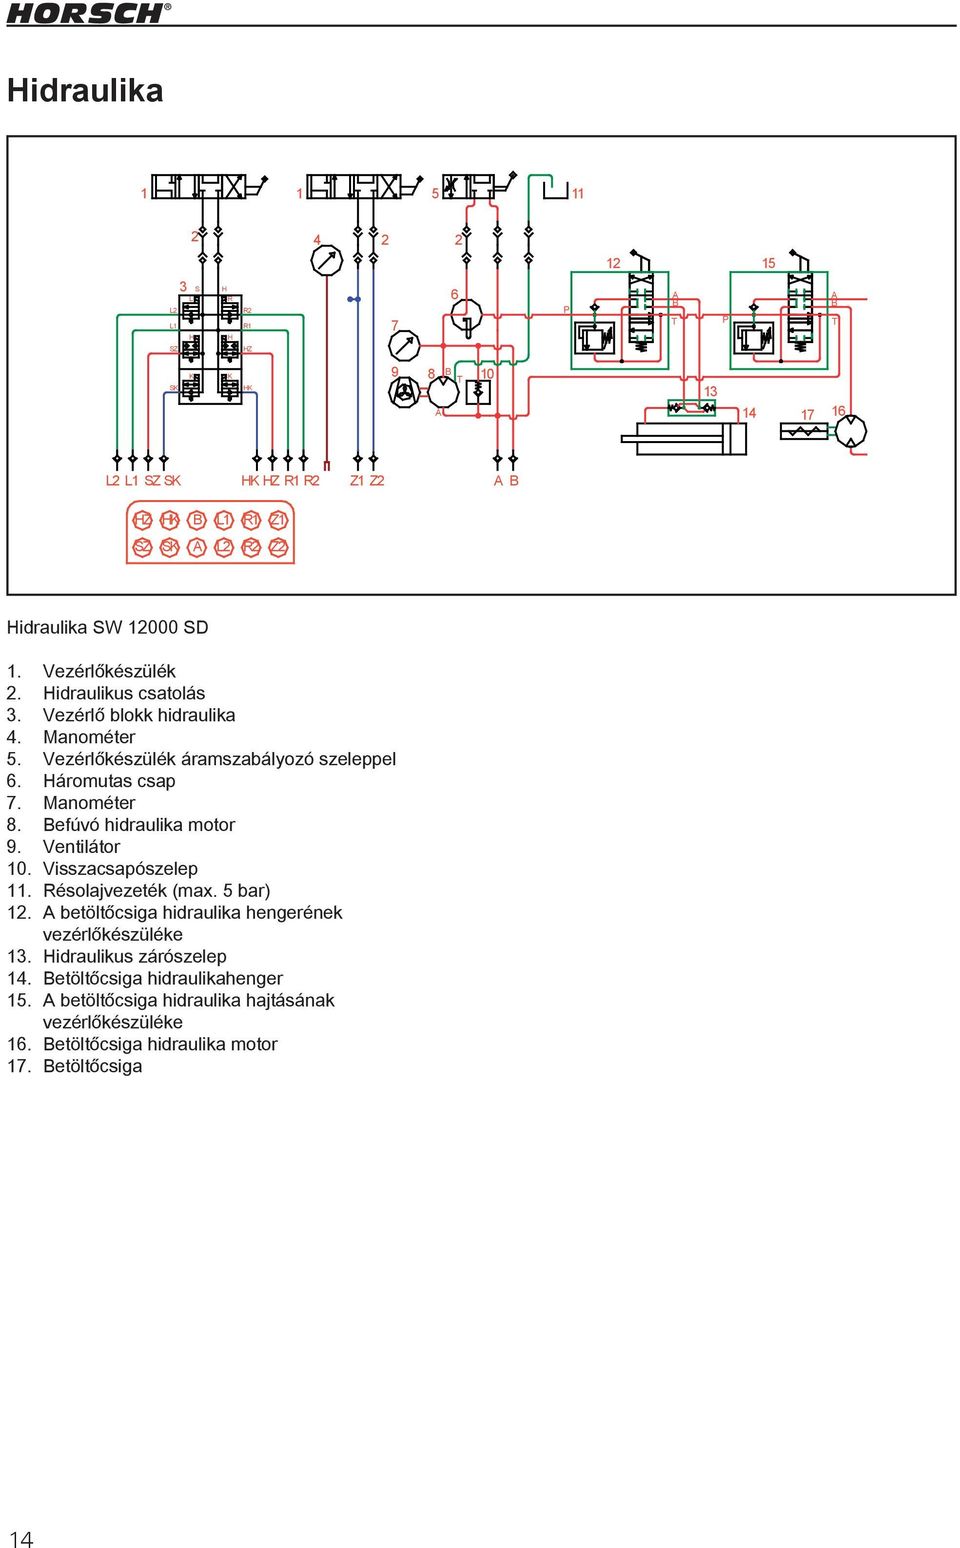 Befúvó hidraulika motor 9. Ventilátor 10. Visszacsapószelep 11. Résolajvezeték (max. 5 bar) 12. A betöltőcsiga hidraulika hengerének Zeichnungsnummer vezérlőkészüléke Hydr.